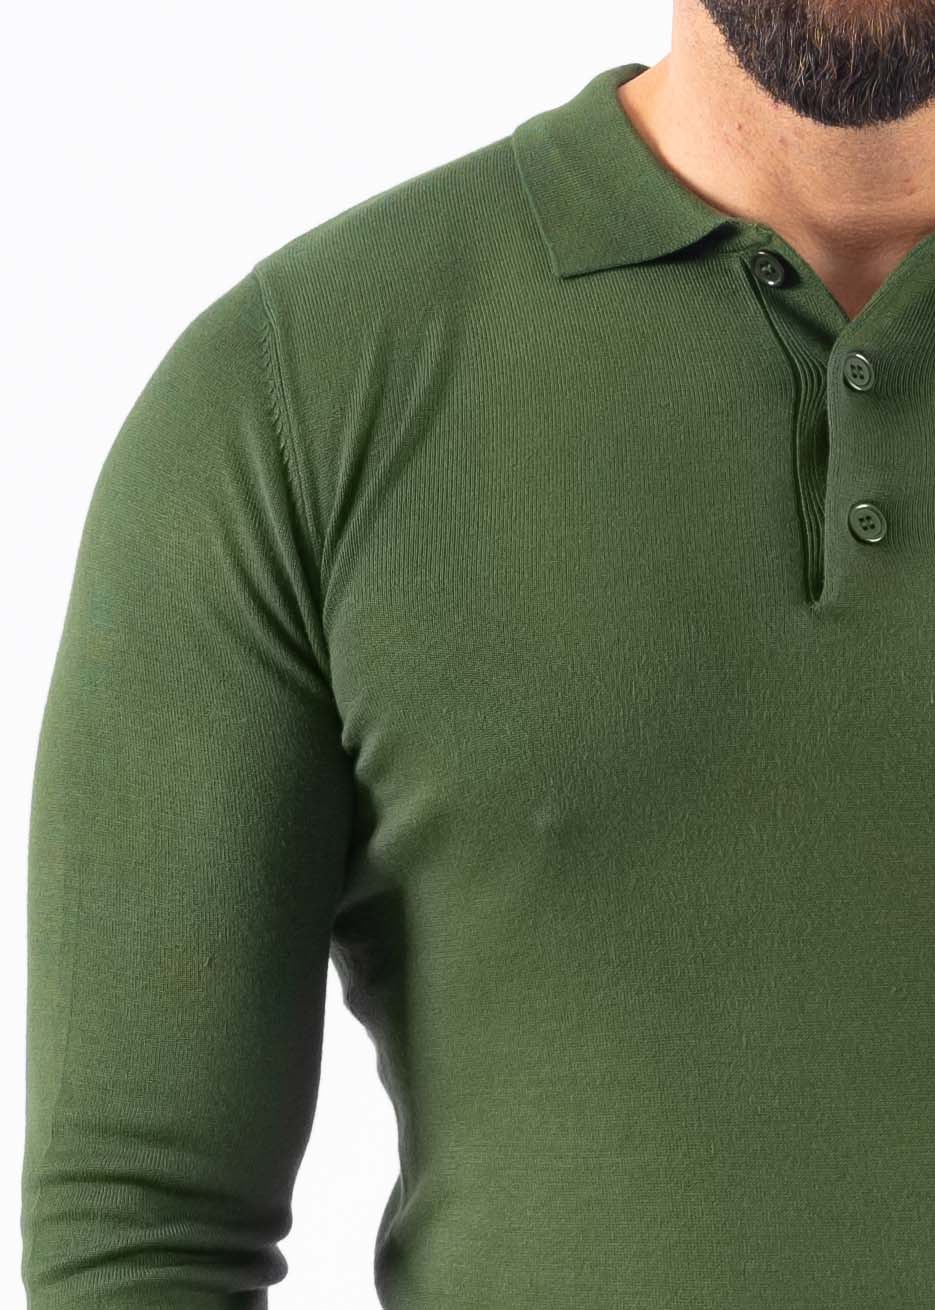 Polo knitwear long sleeve green